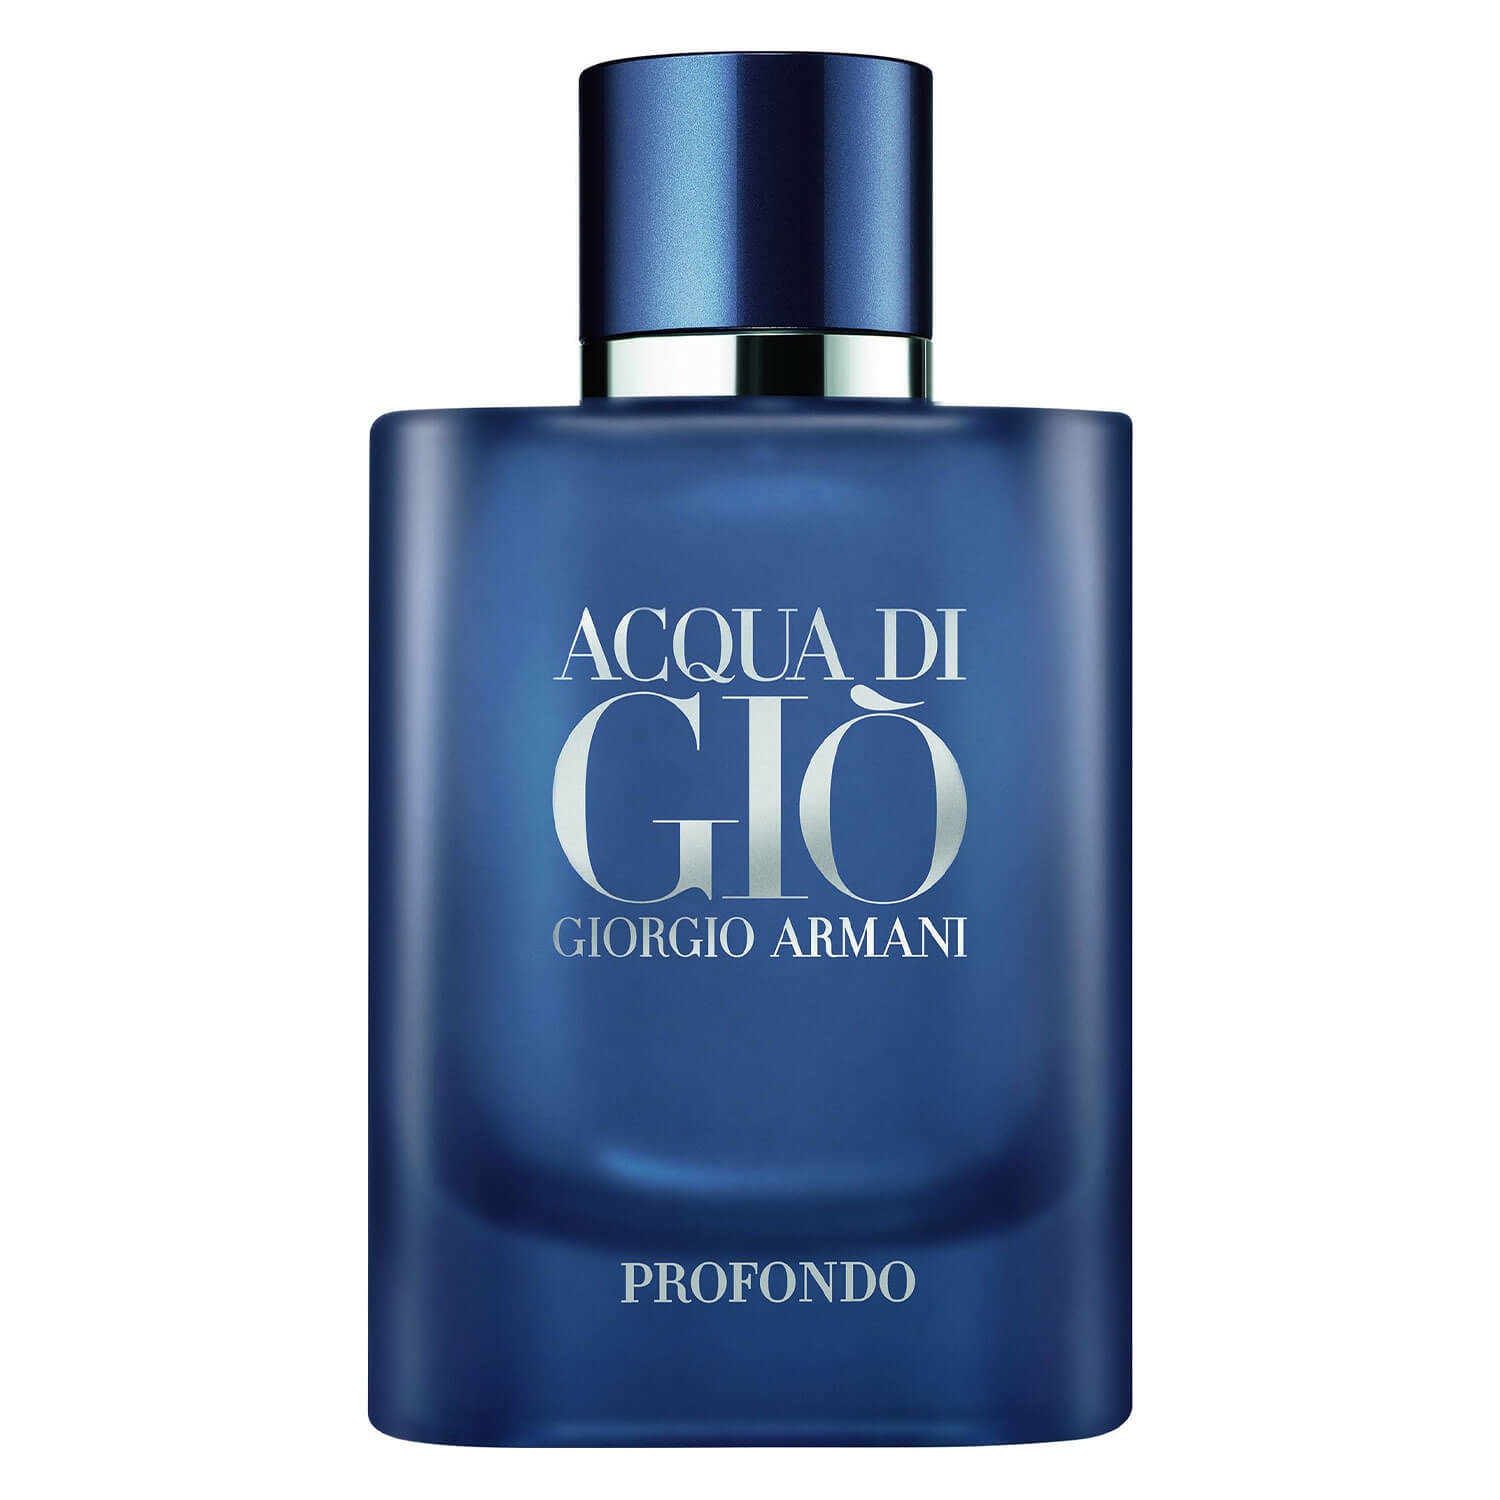 Produktbild von Acqua di Giò - Profondo Eau de Parfum